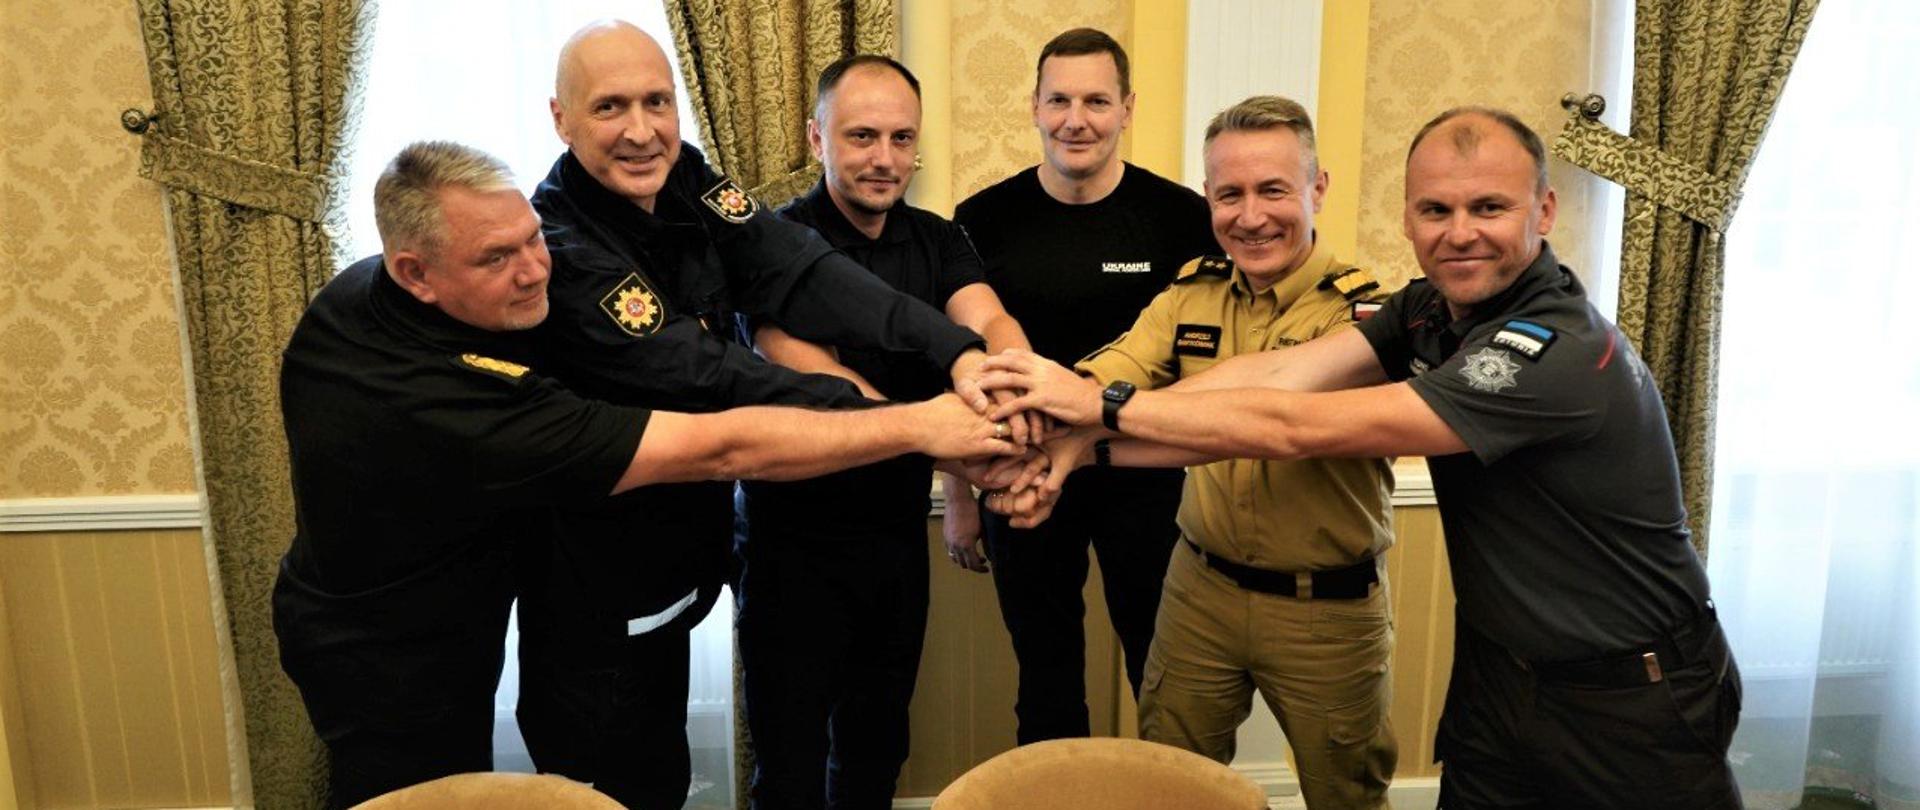 Na zdjęciu widać jak szefowie służb ratowniczych z Polski, Litwy, Łotwy i Estonii w Ukrainie nakładają swoje ręce na siebie